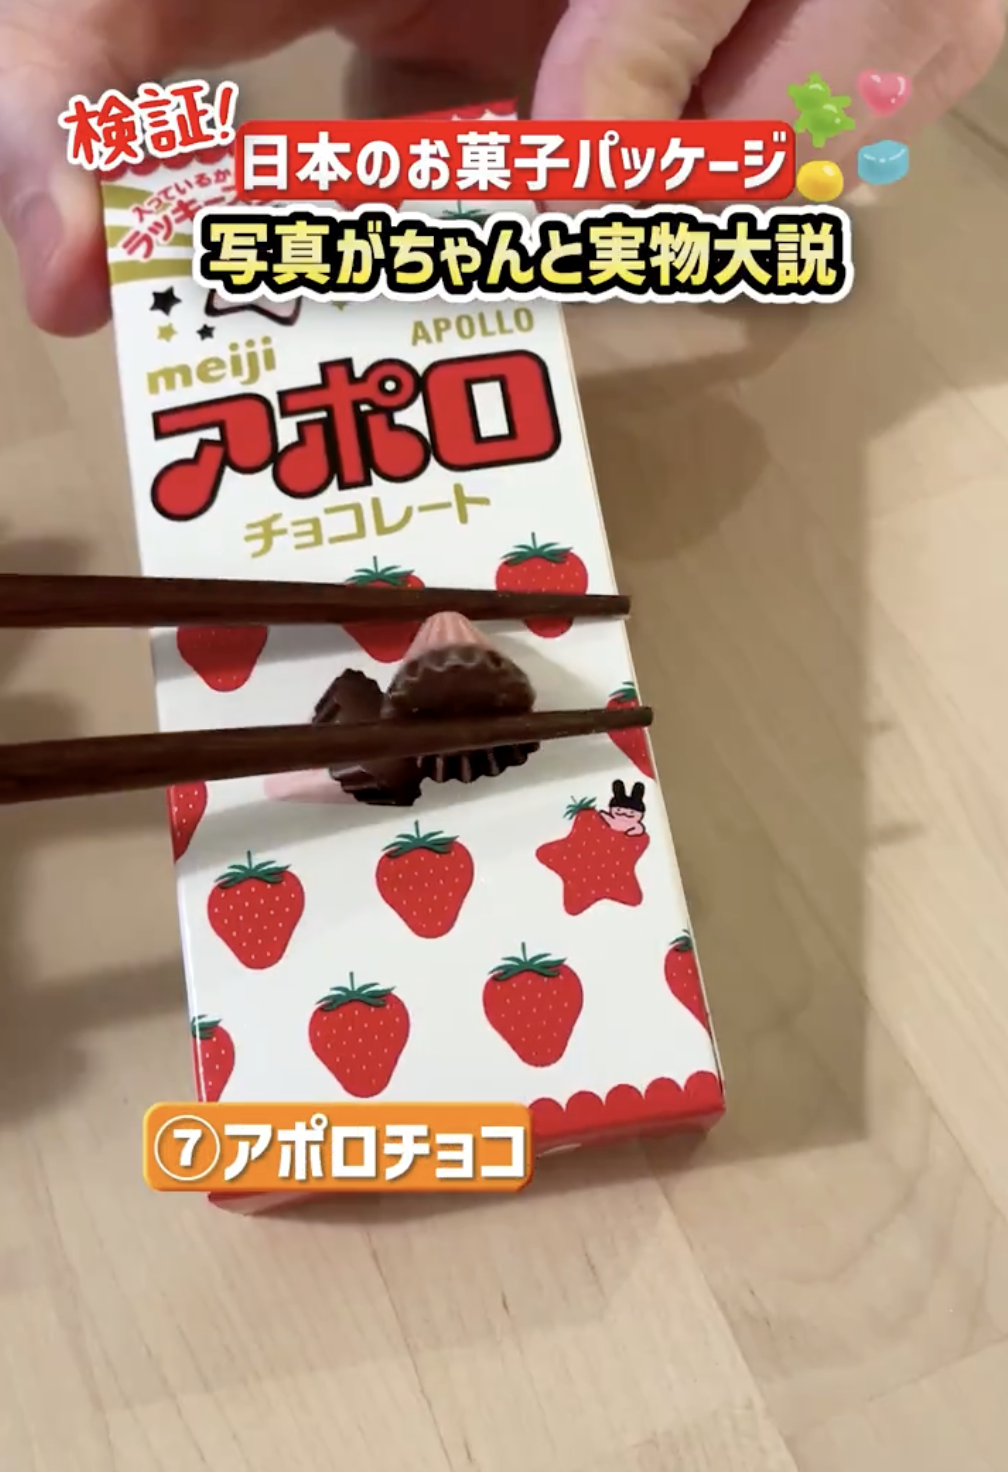 箸でつままれたチョコレートとそのパッケージ。Apolloブランドのイチゴ形チョコ。